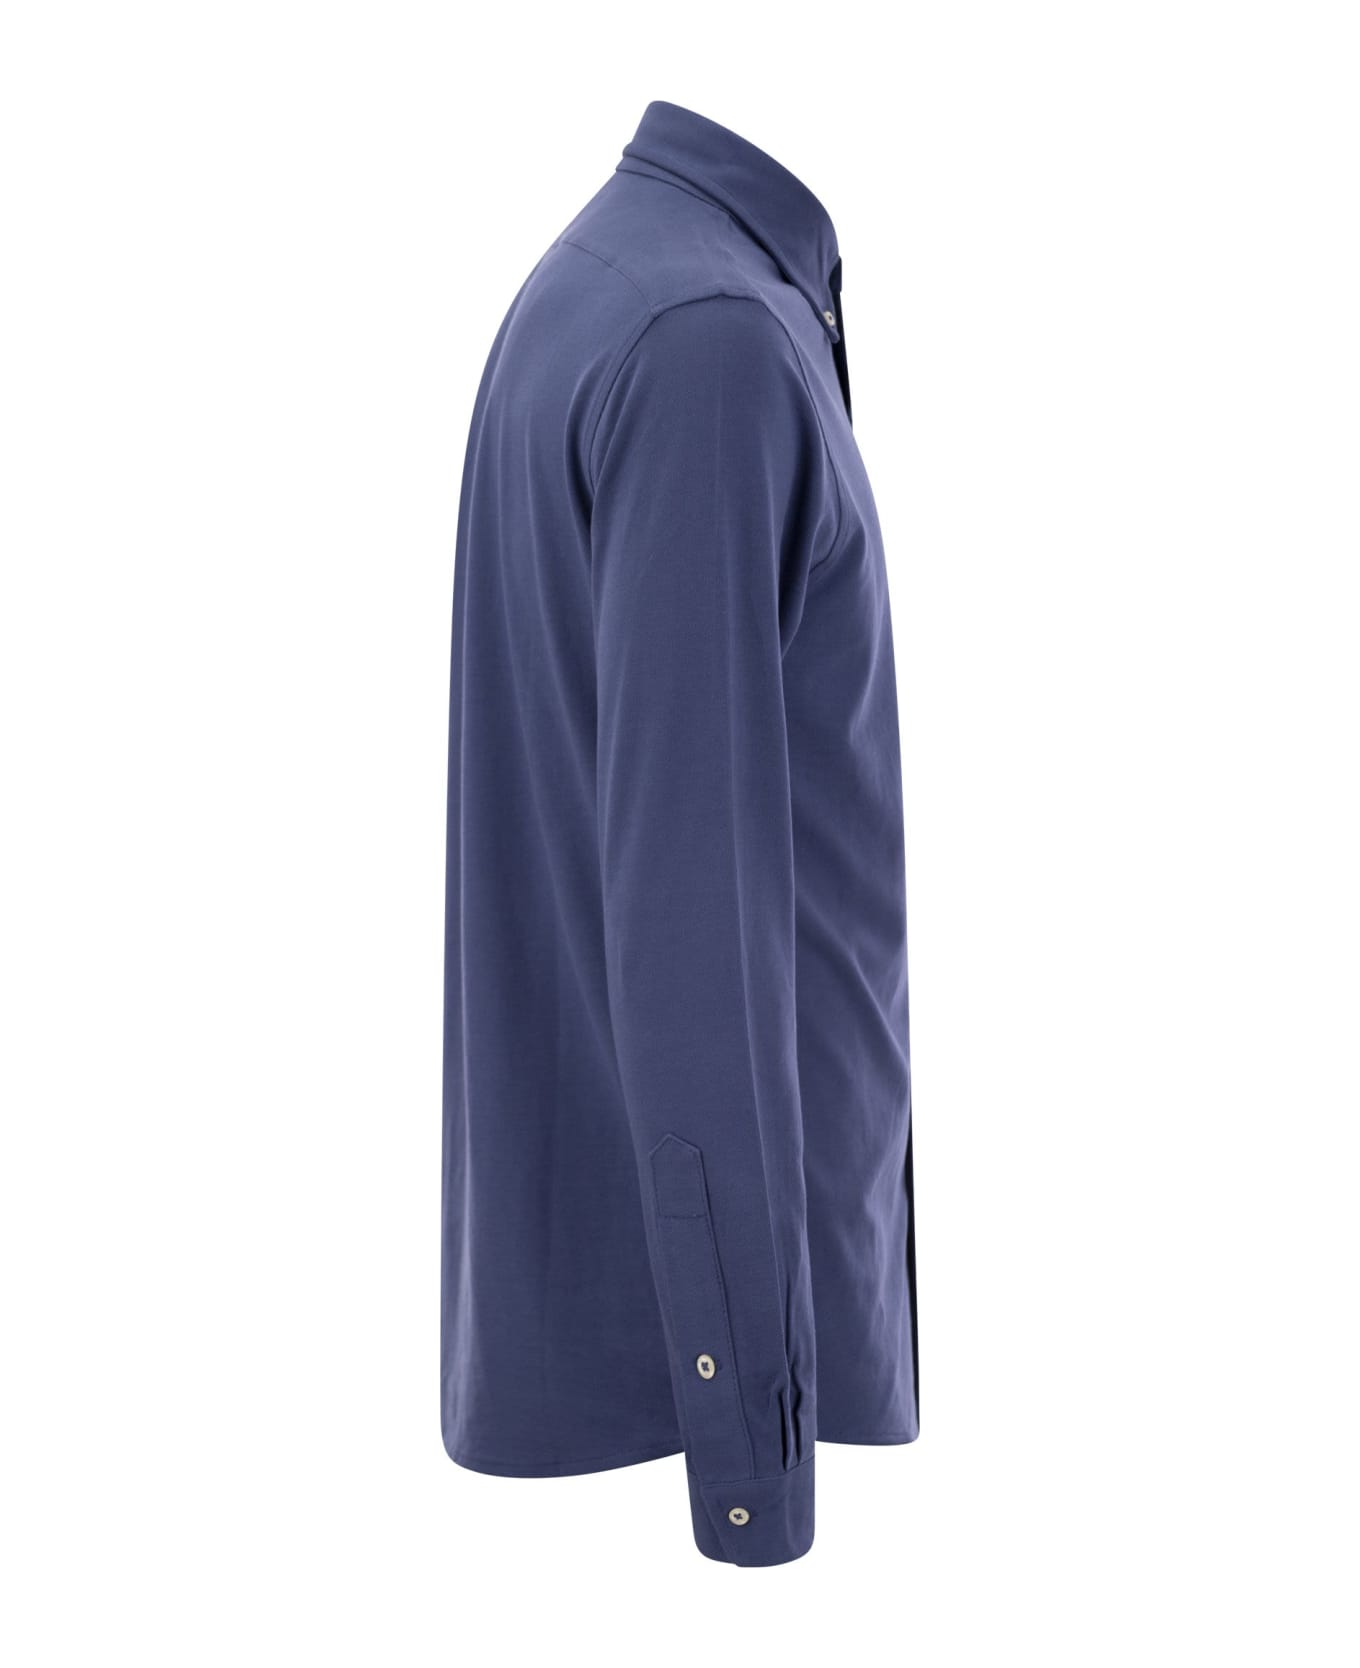 Polo Ralph Lauren Ultralight Pique Shirt - Old Royal